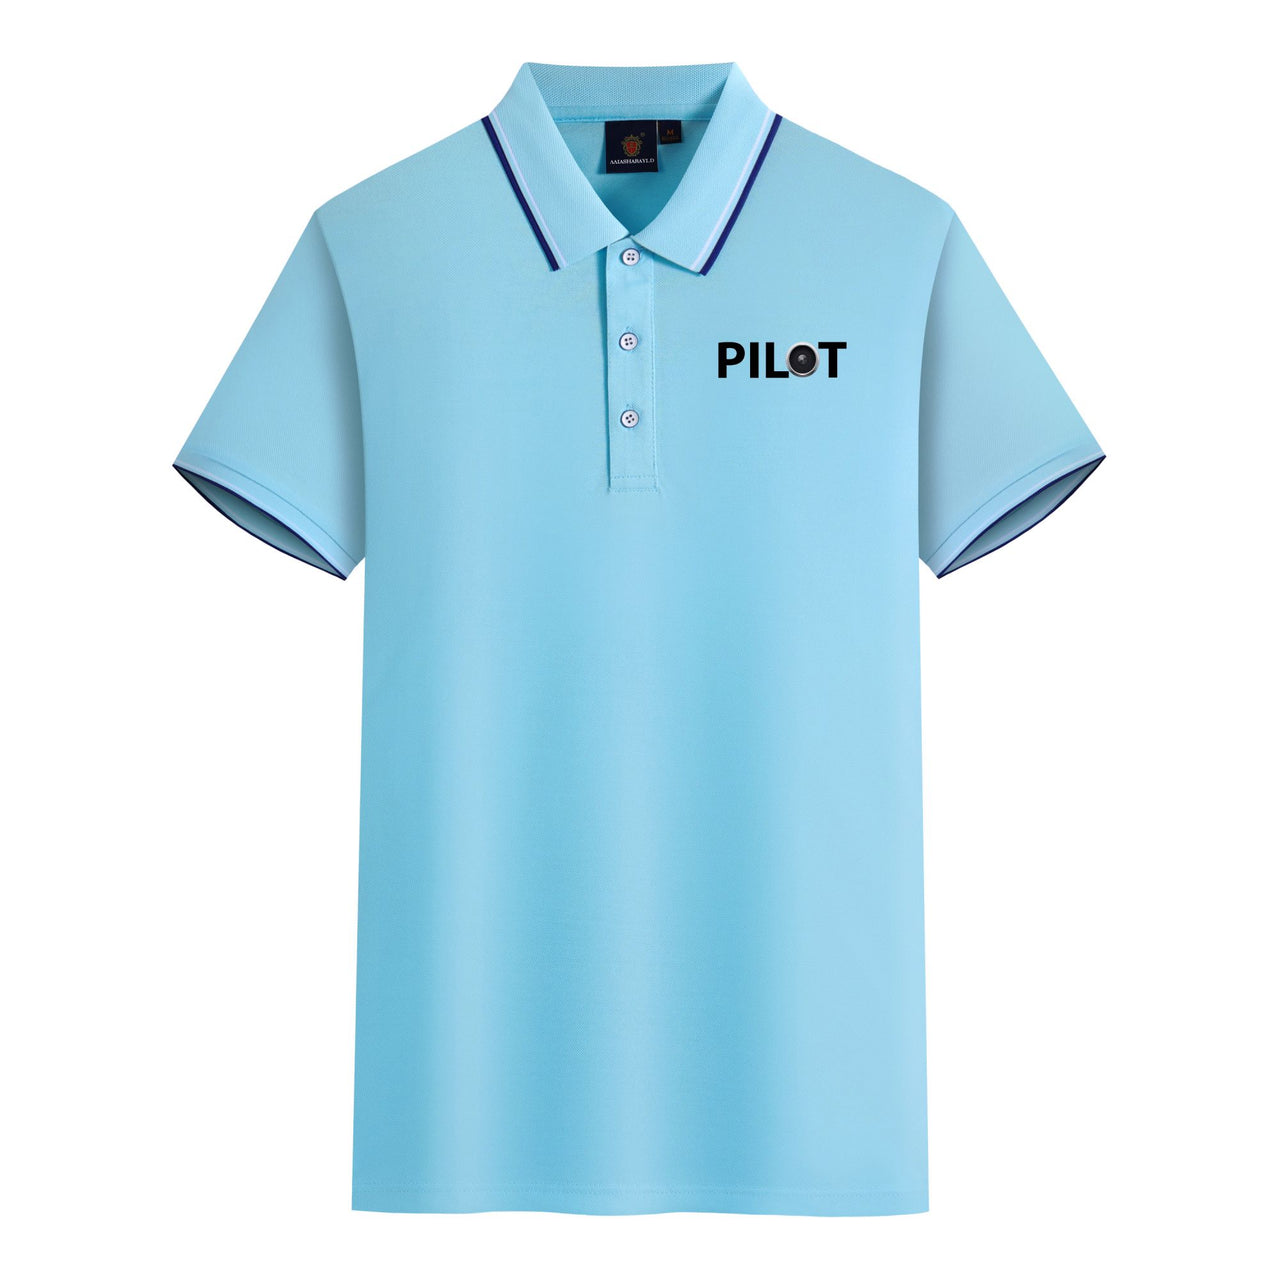 Pilot & Jet Engine Designed Stylish Polo T-Shirts